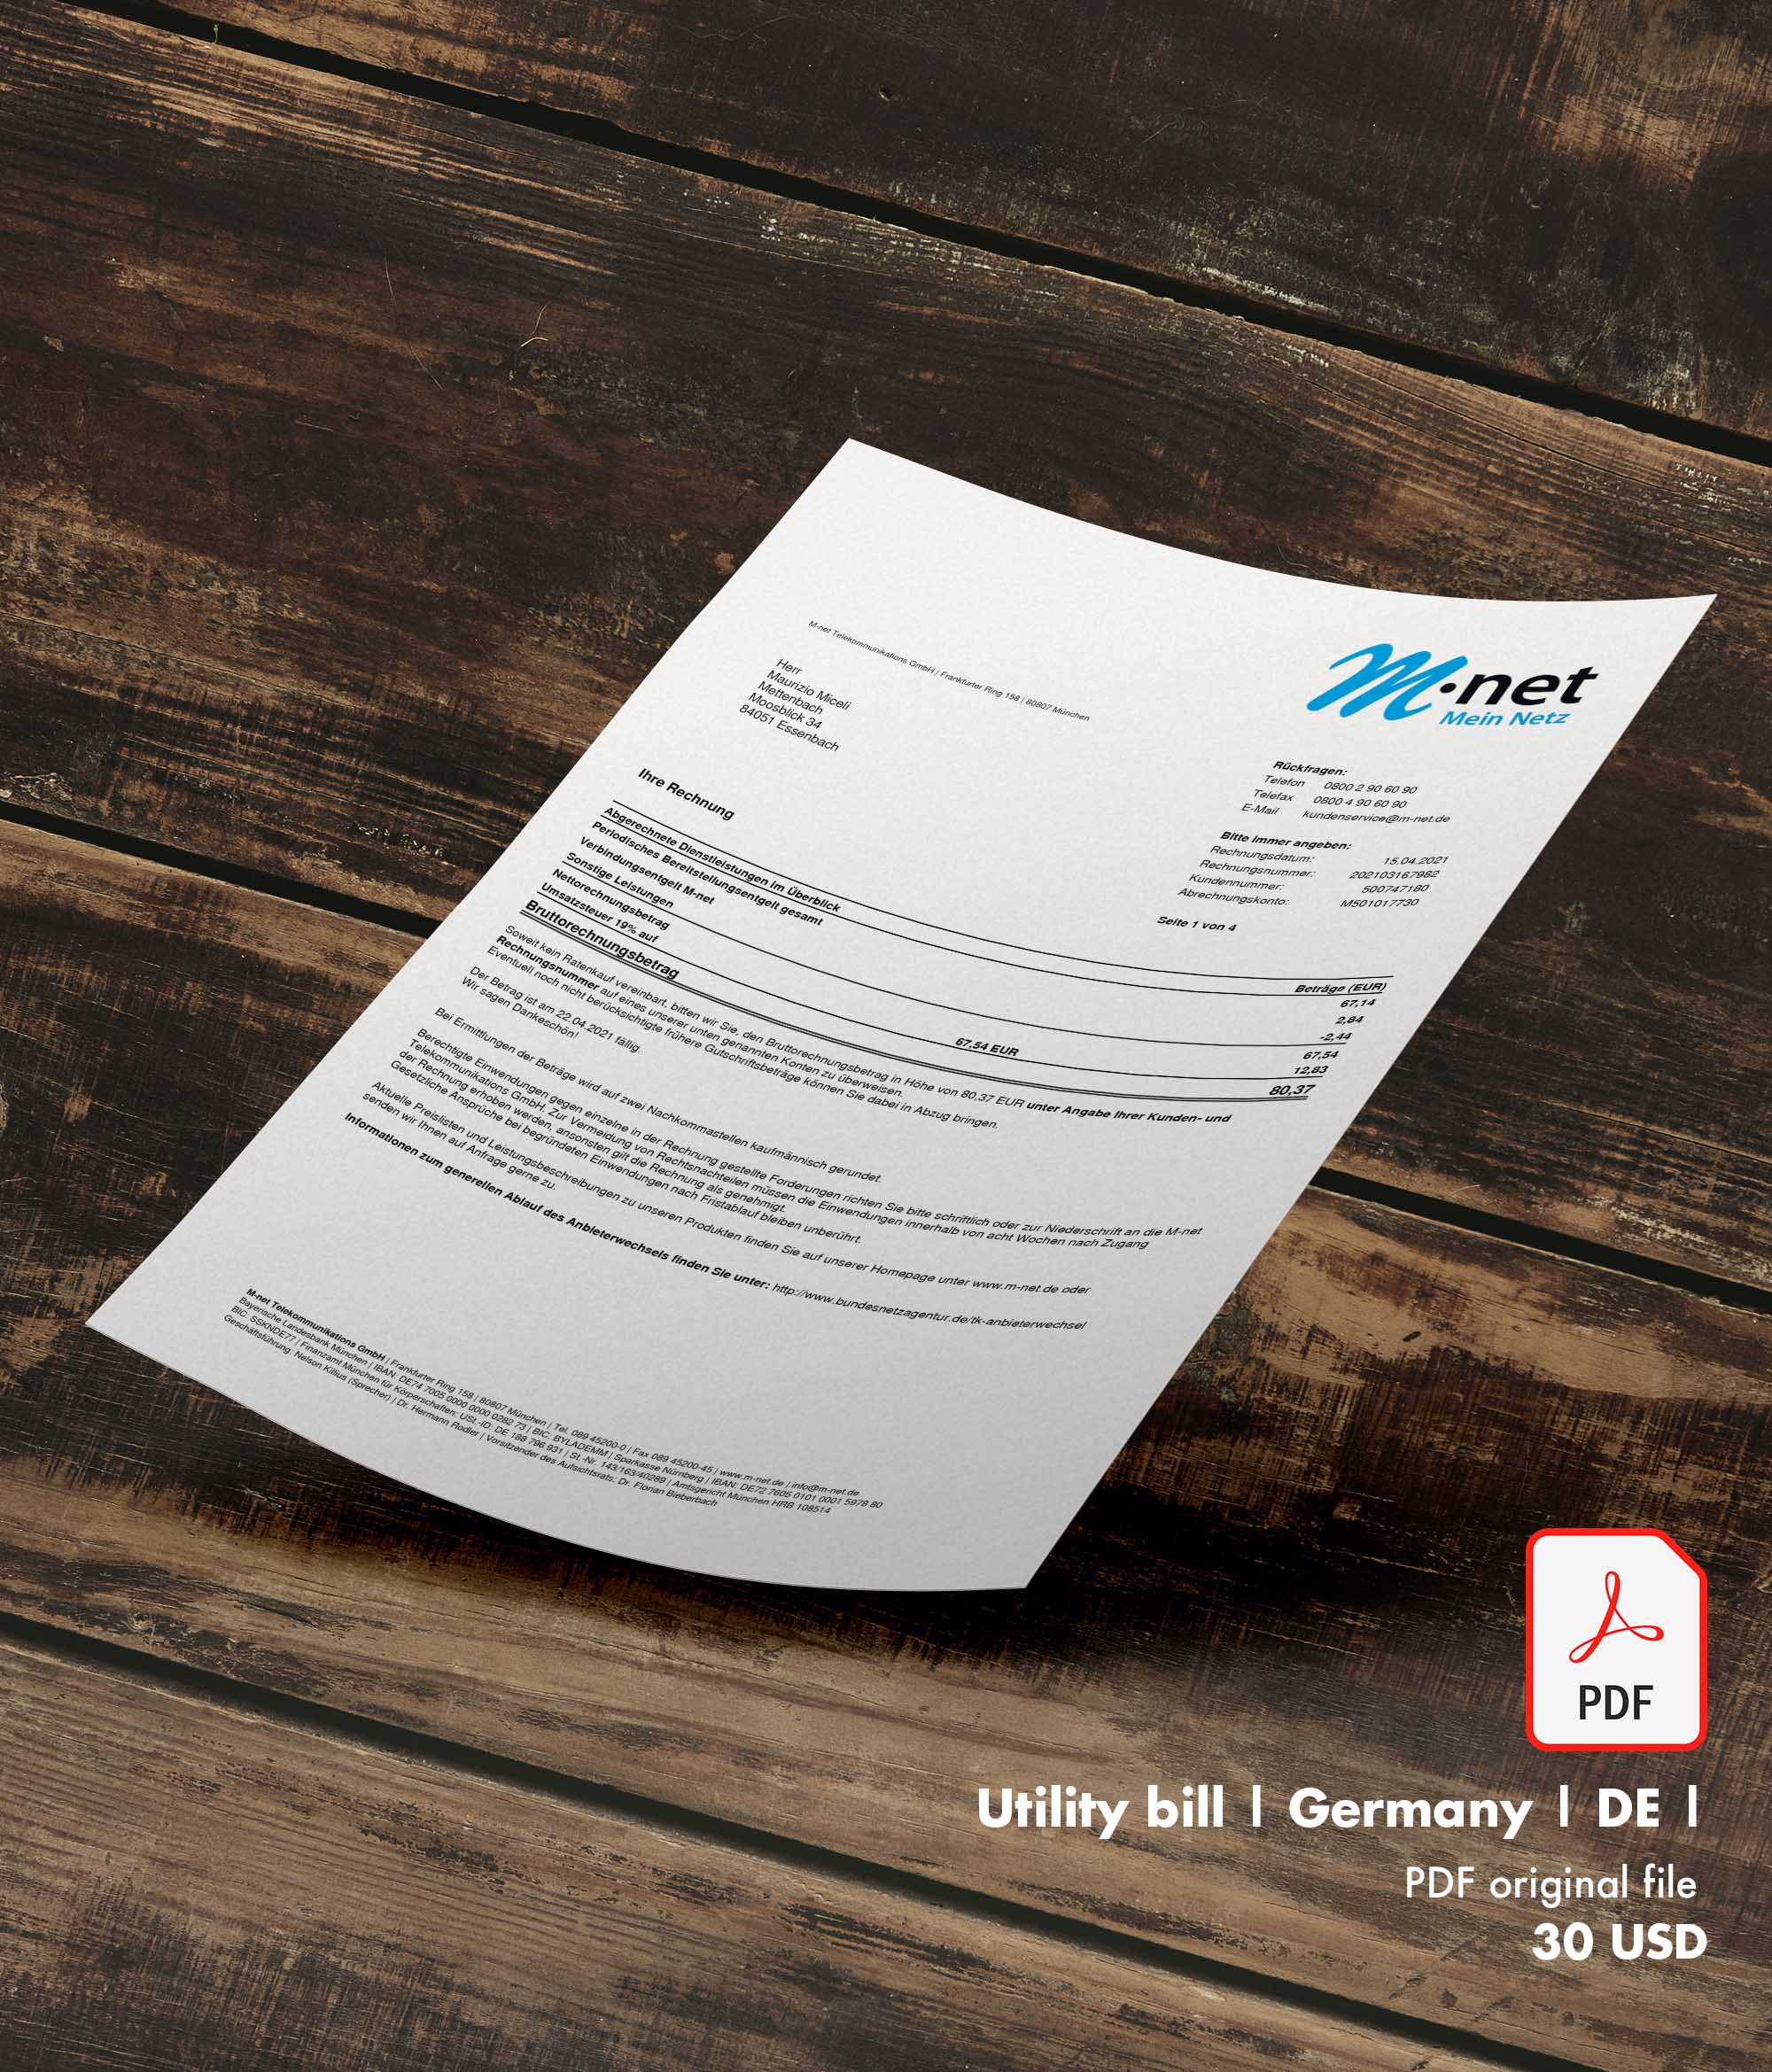 Utility bill | M-net | Germany | DE1